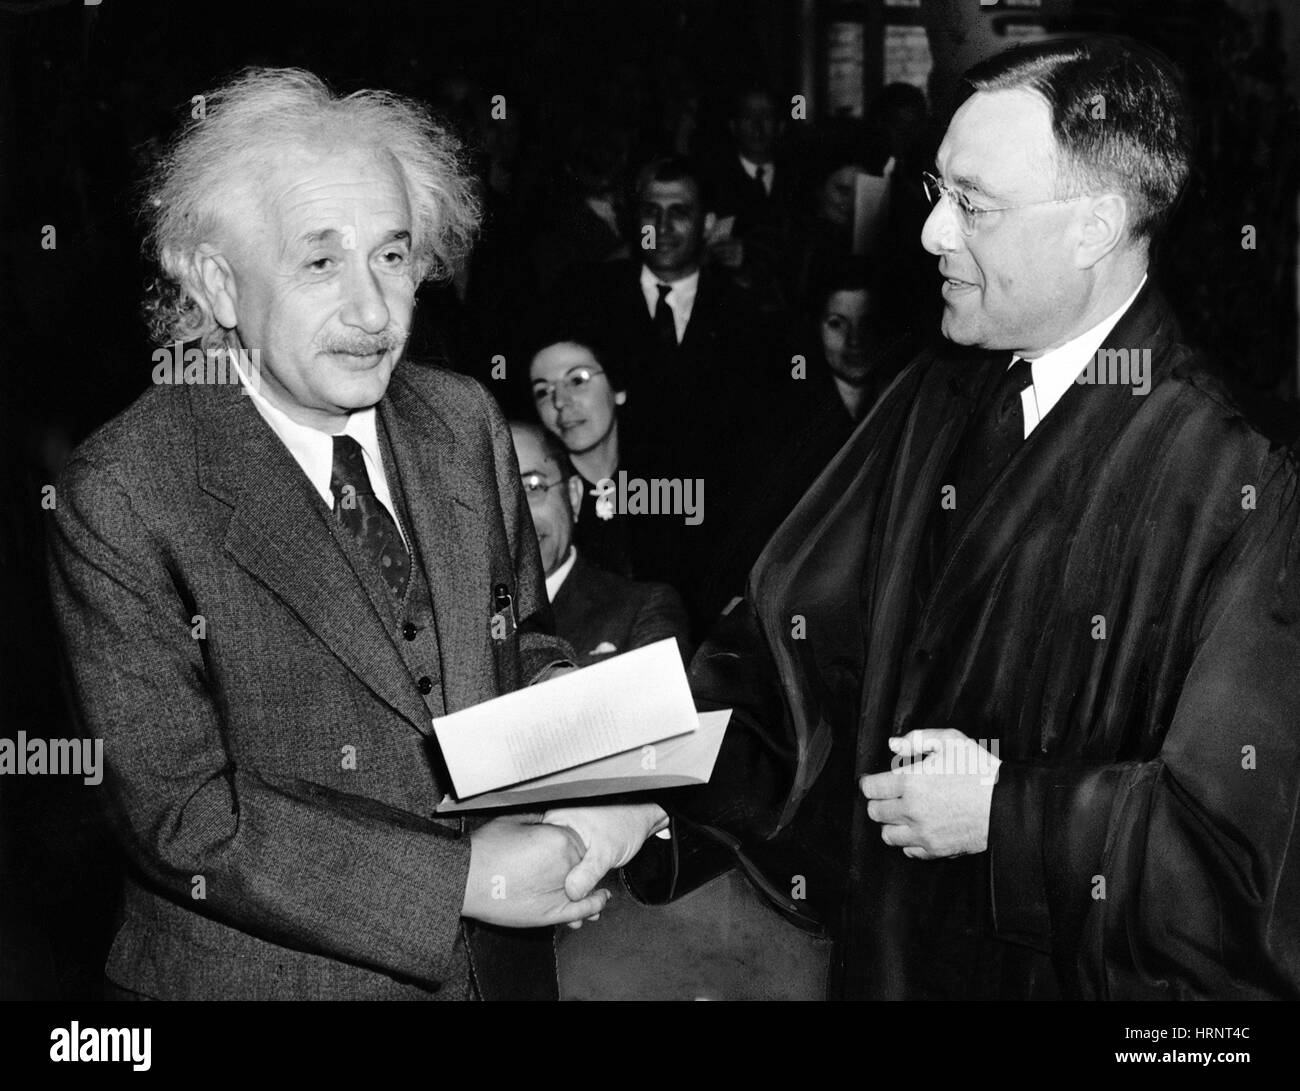 Albert Einstein fisico tedesco-americana Foto Stock